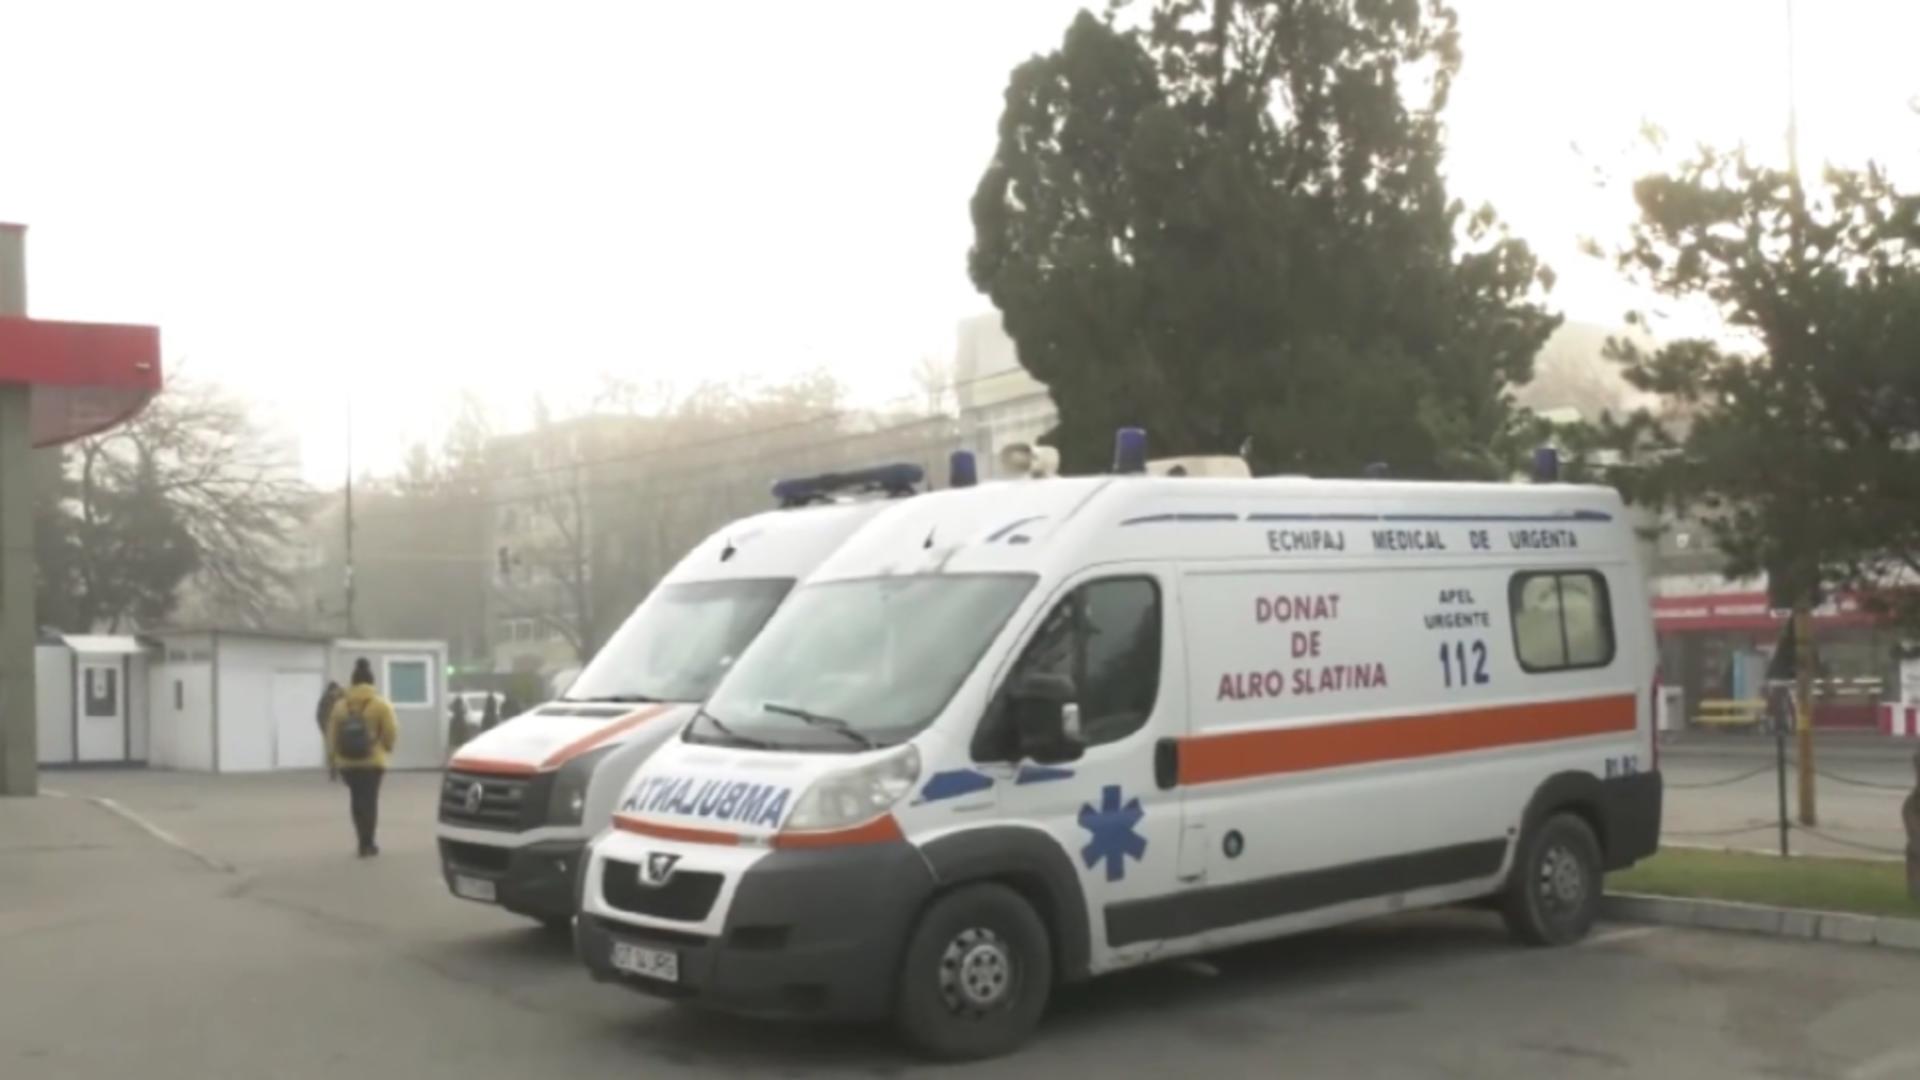 Asistentă din cadrul Spitalului Județean Slatina, hărțuită de șefi pentru că a vorbit despre neregulile din spital. Femeia face acuzații grave